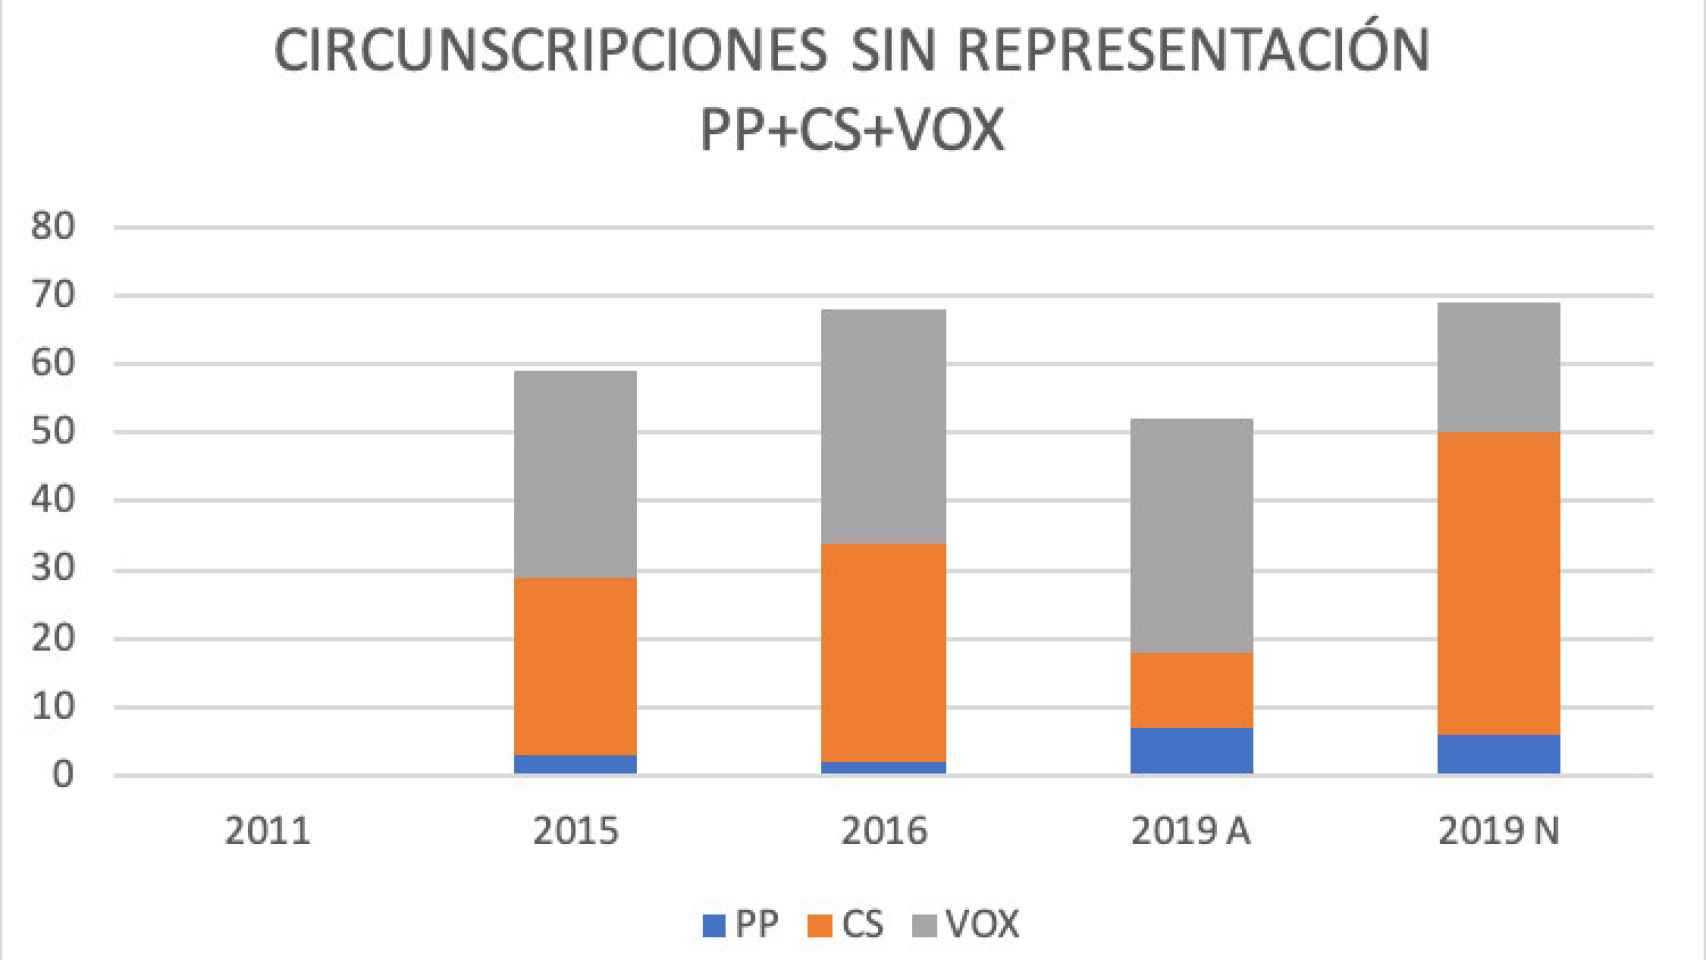 Circunscripciones sin representación PP + Ciudadanos + Vox entre 2011 y 2019.